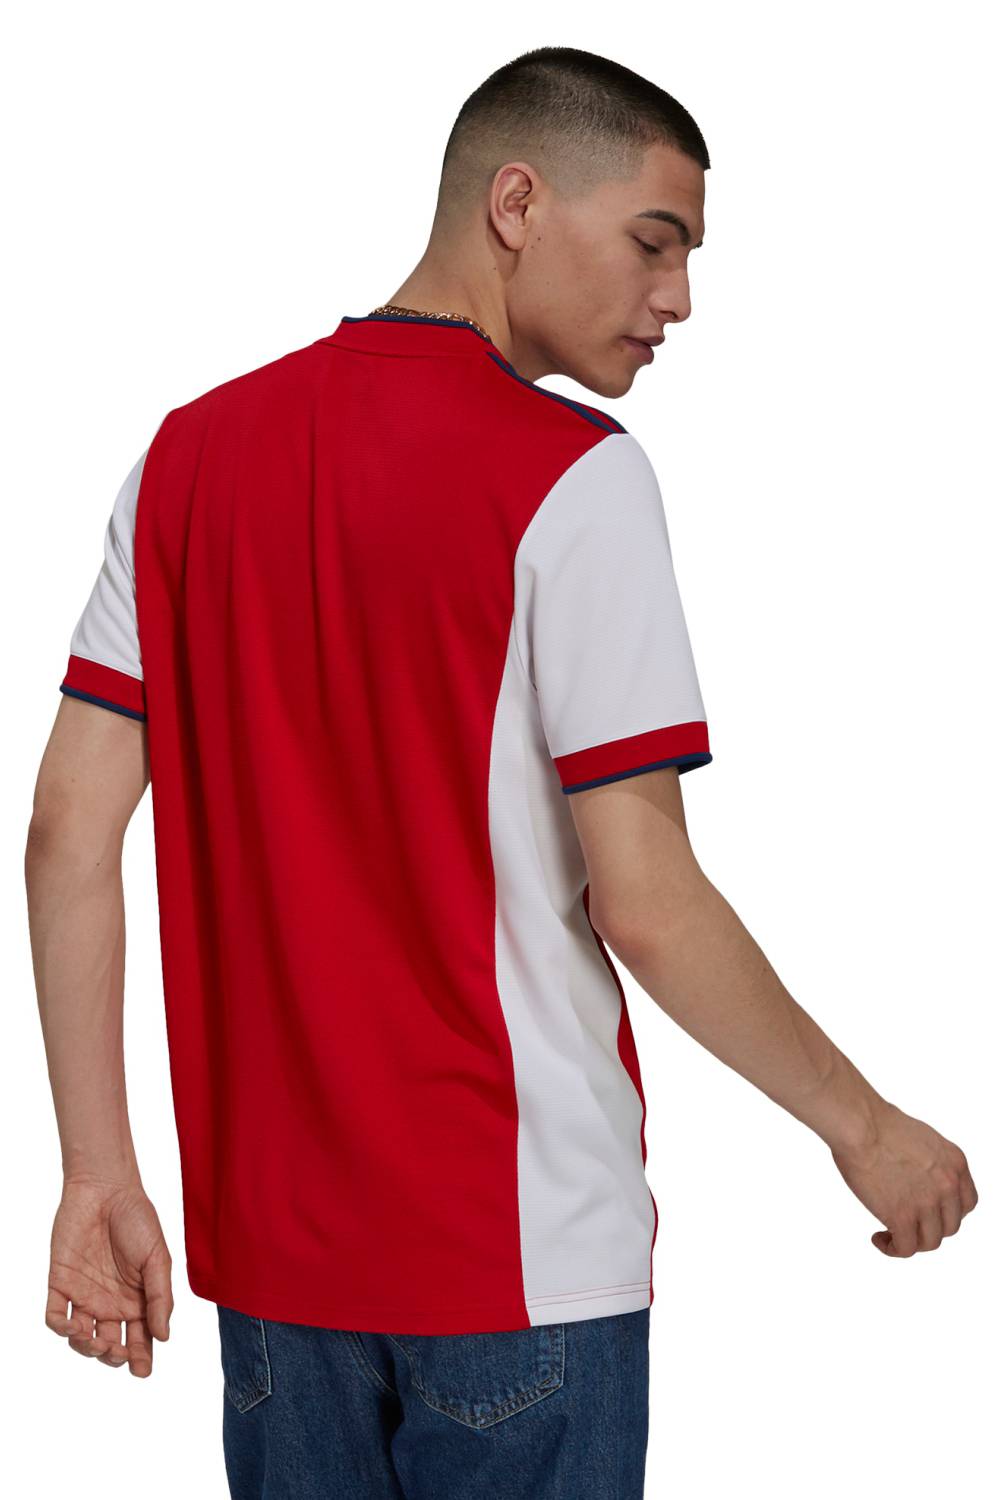 Adidas - Adidas Camiseta de Fútbol Arsenal Local Hombre